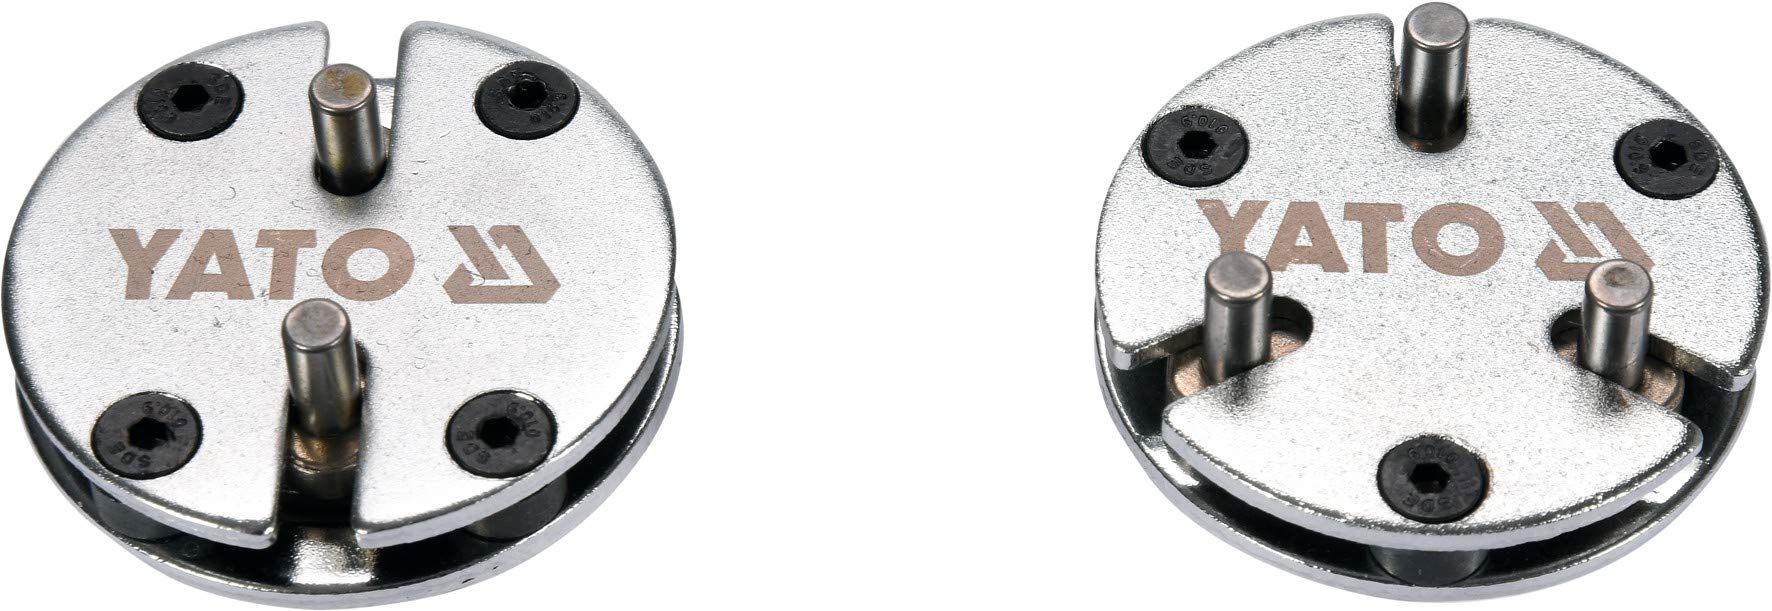 Yato Profi Bremskolben Rücksteller Satz, 2 teilig, 2 & 3 Pin Adapter, 20-35 mm, 10mm 3/8“, einstellbar, universal für viele Marken und Modelle, Bremsk von YATO